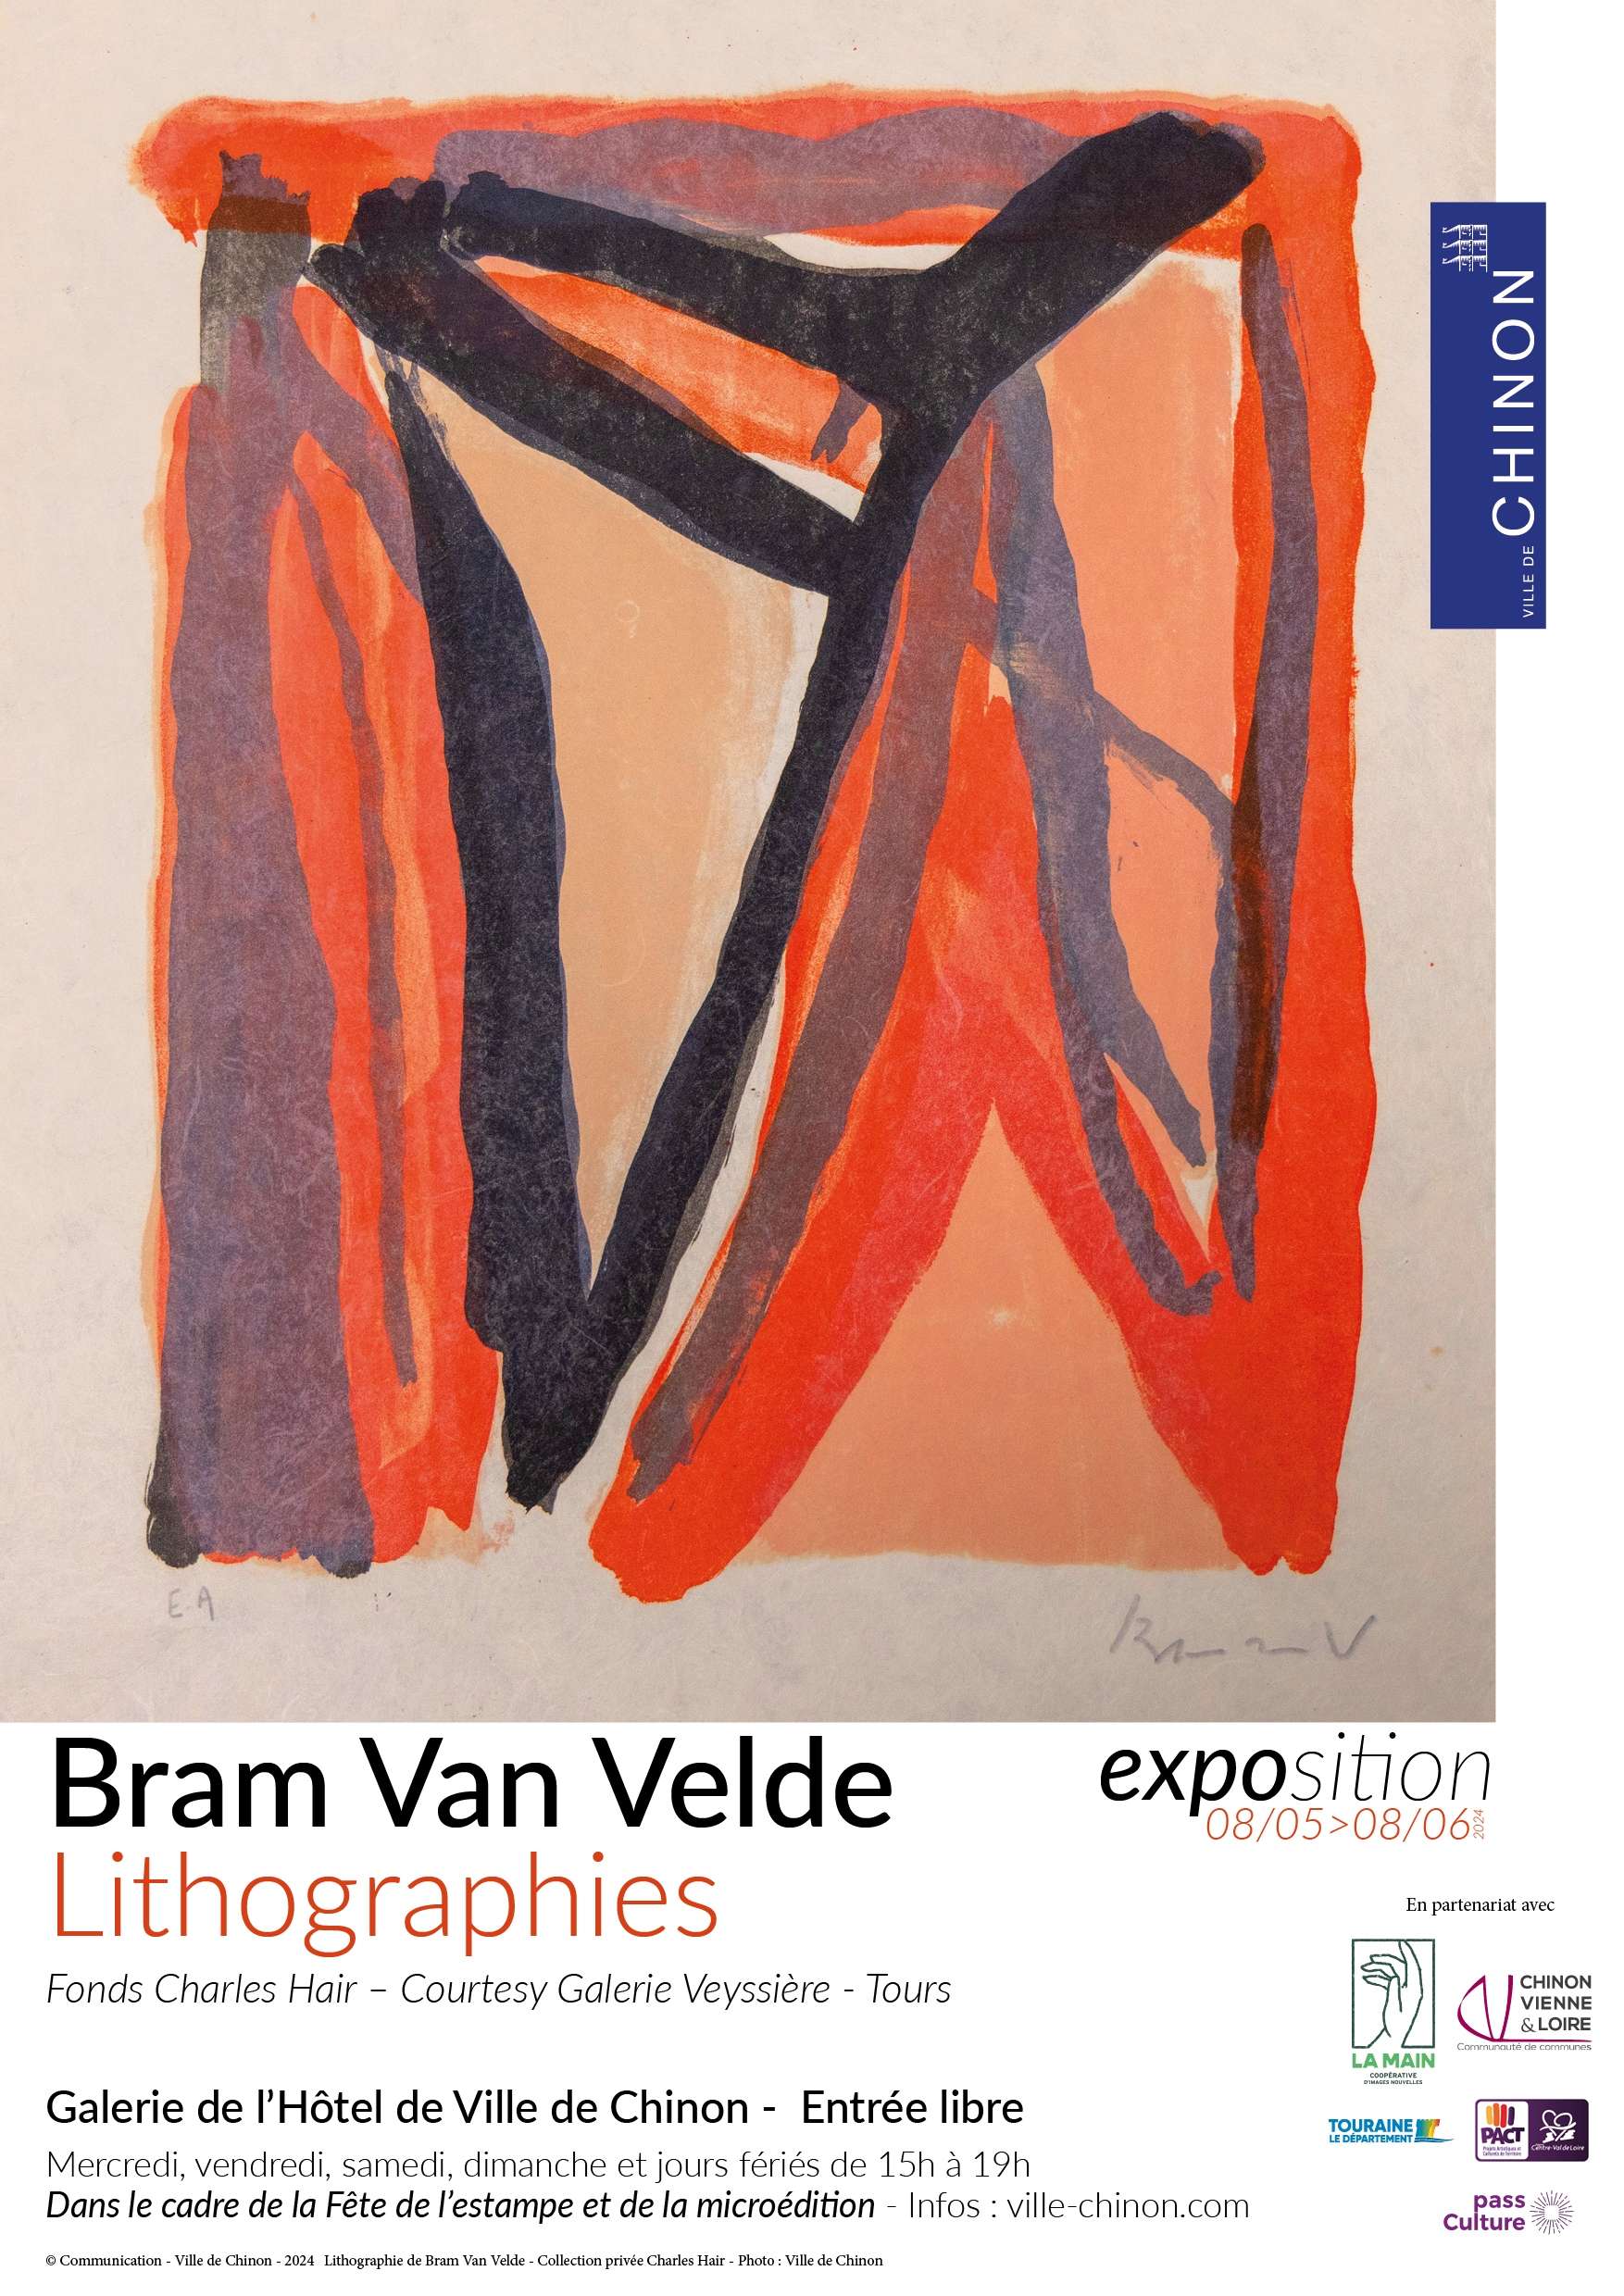 Estampe de Bram Van Velde